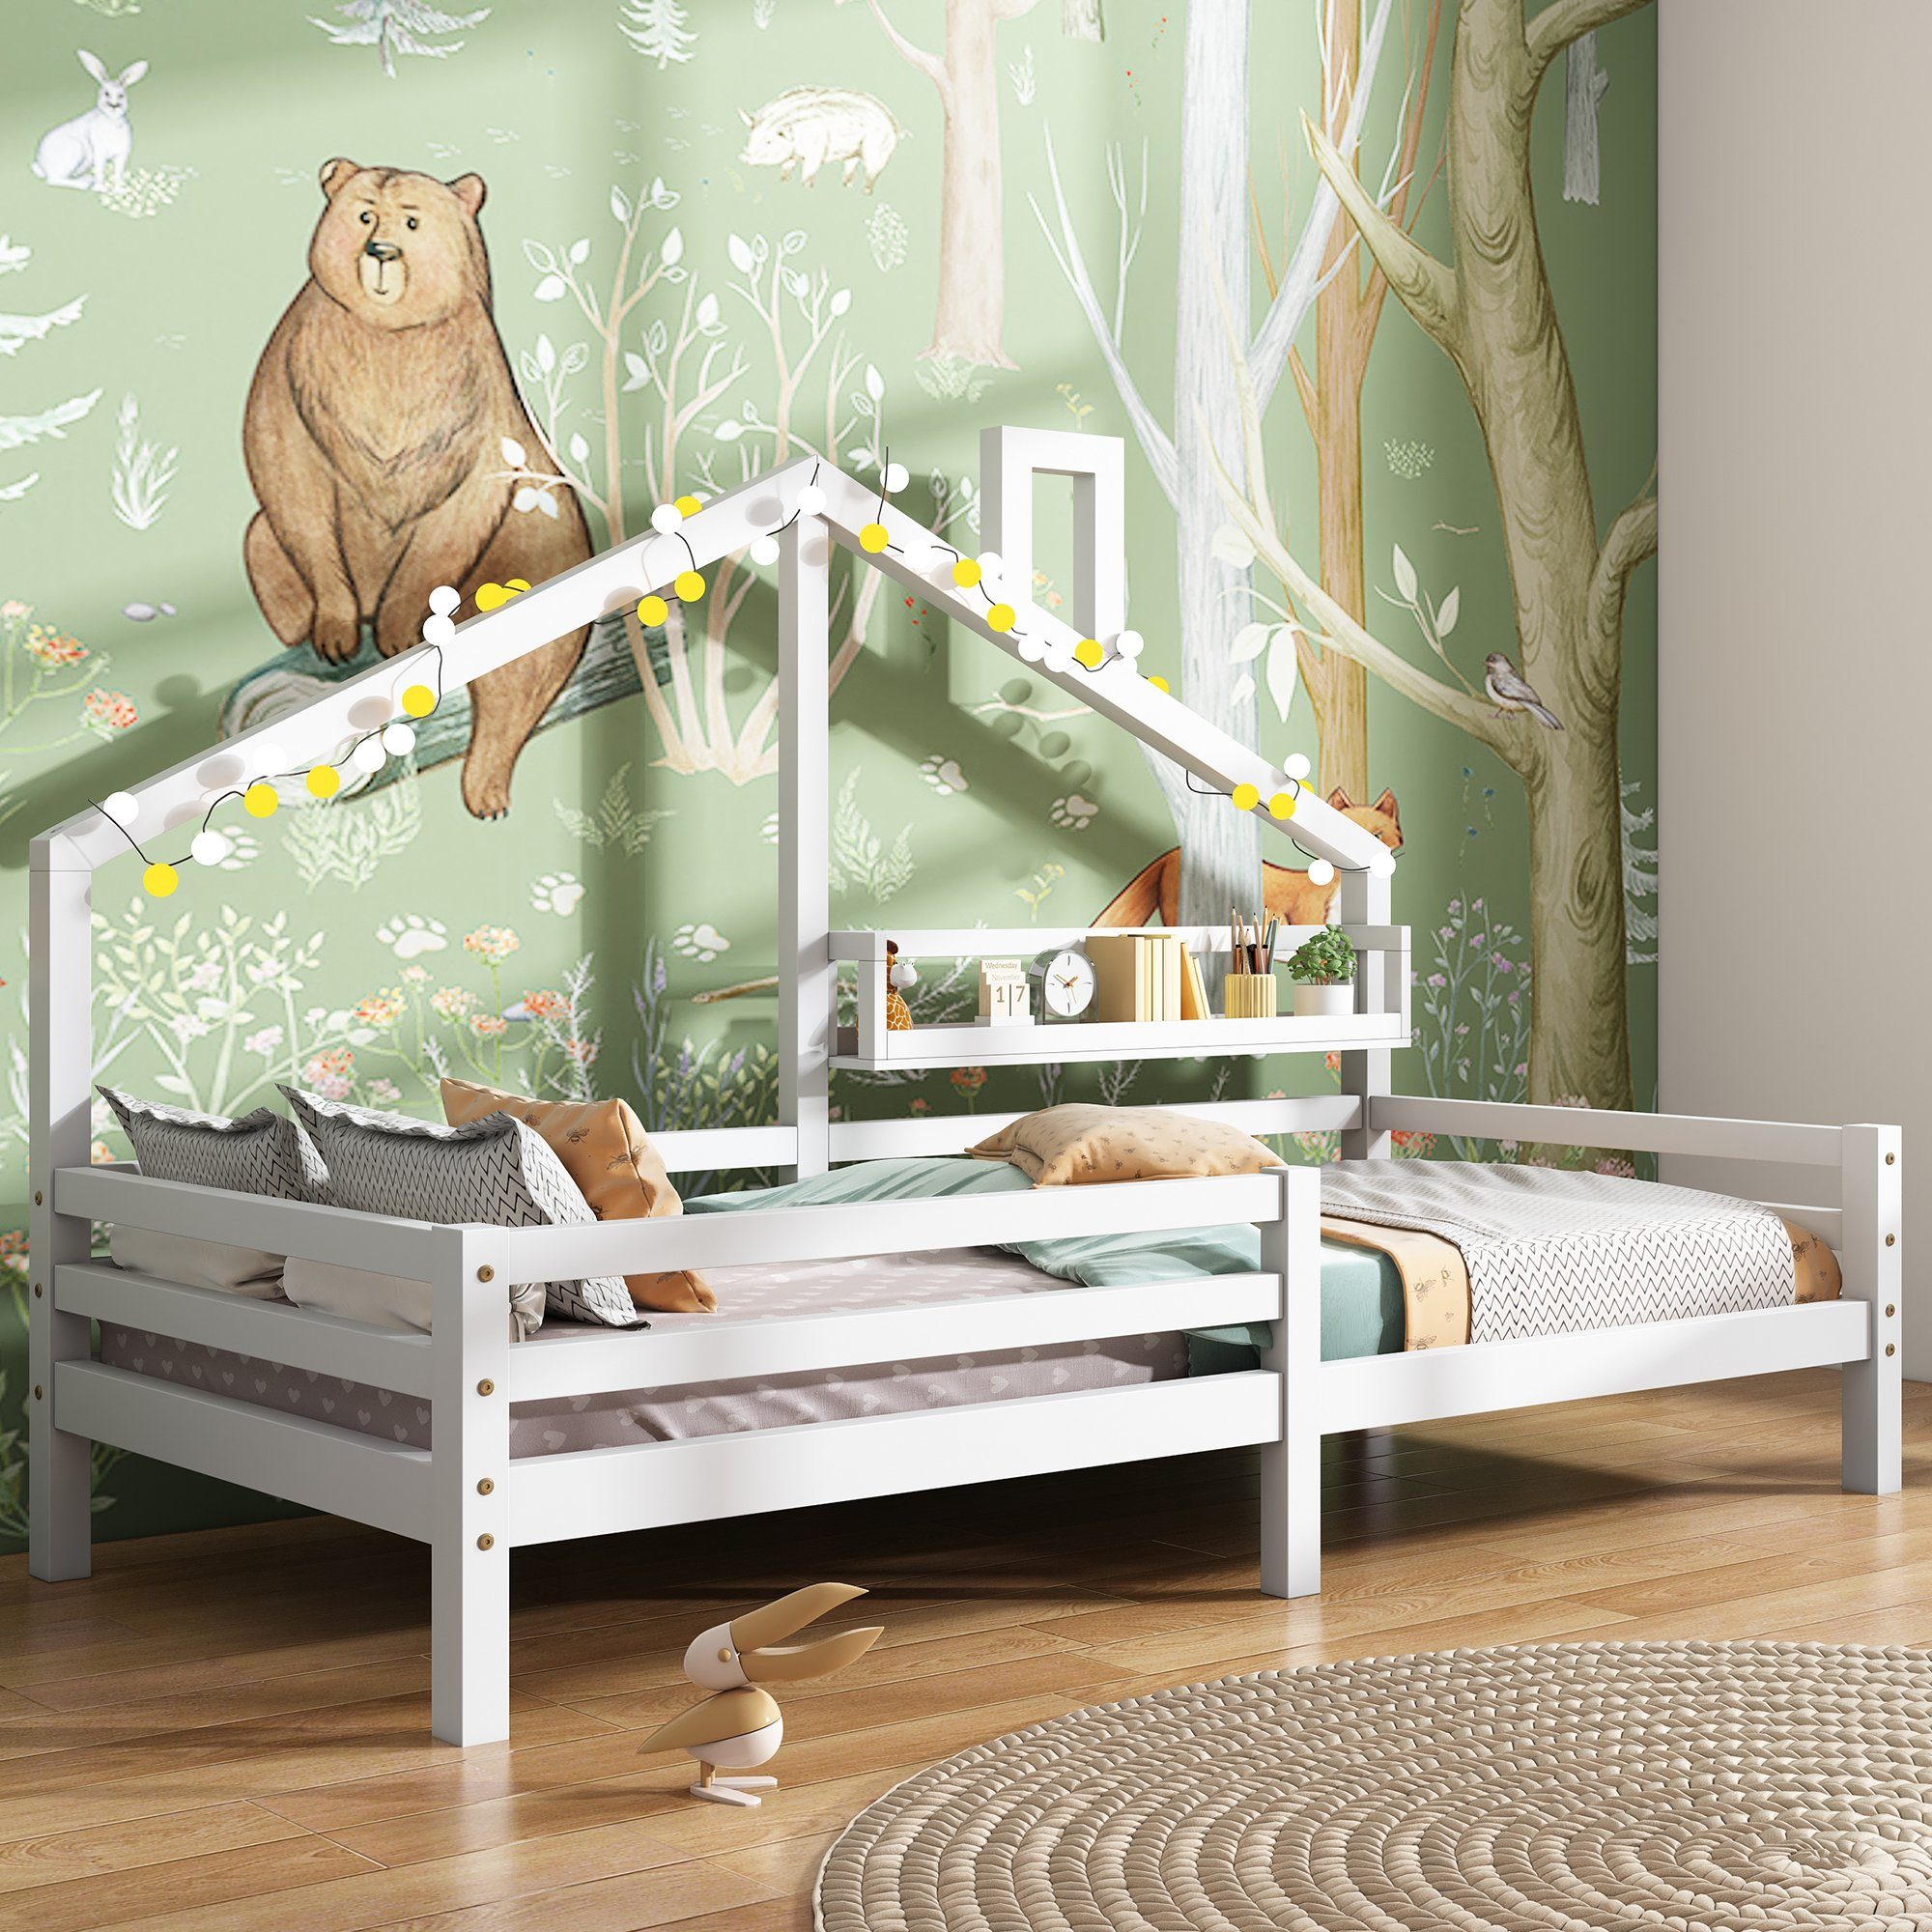 SOFTWEARY Kinderbett (Hausbett mit Lattenrost und Regal, 90x200 cm), Holzbett aus Kiefer, Einzelbett inkl. Rausfallschutz